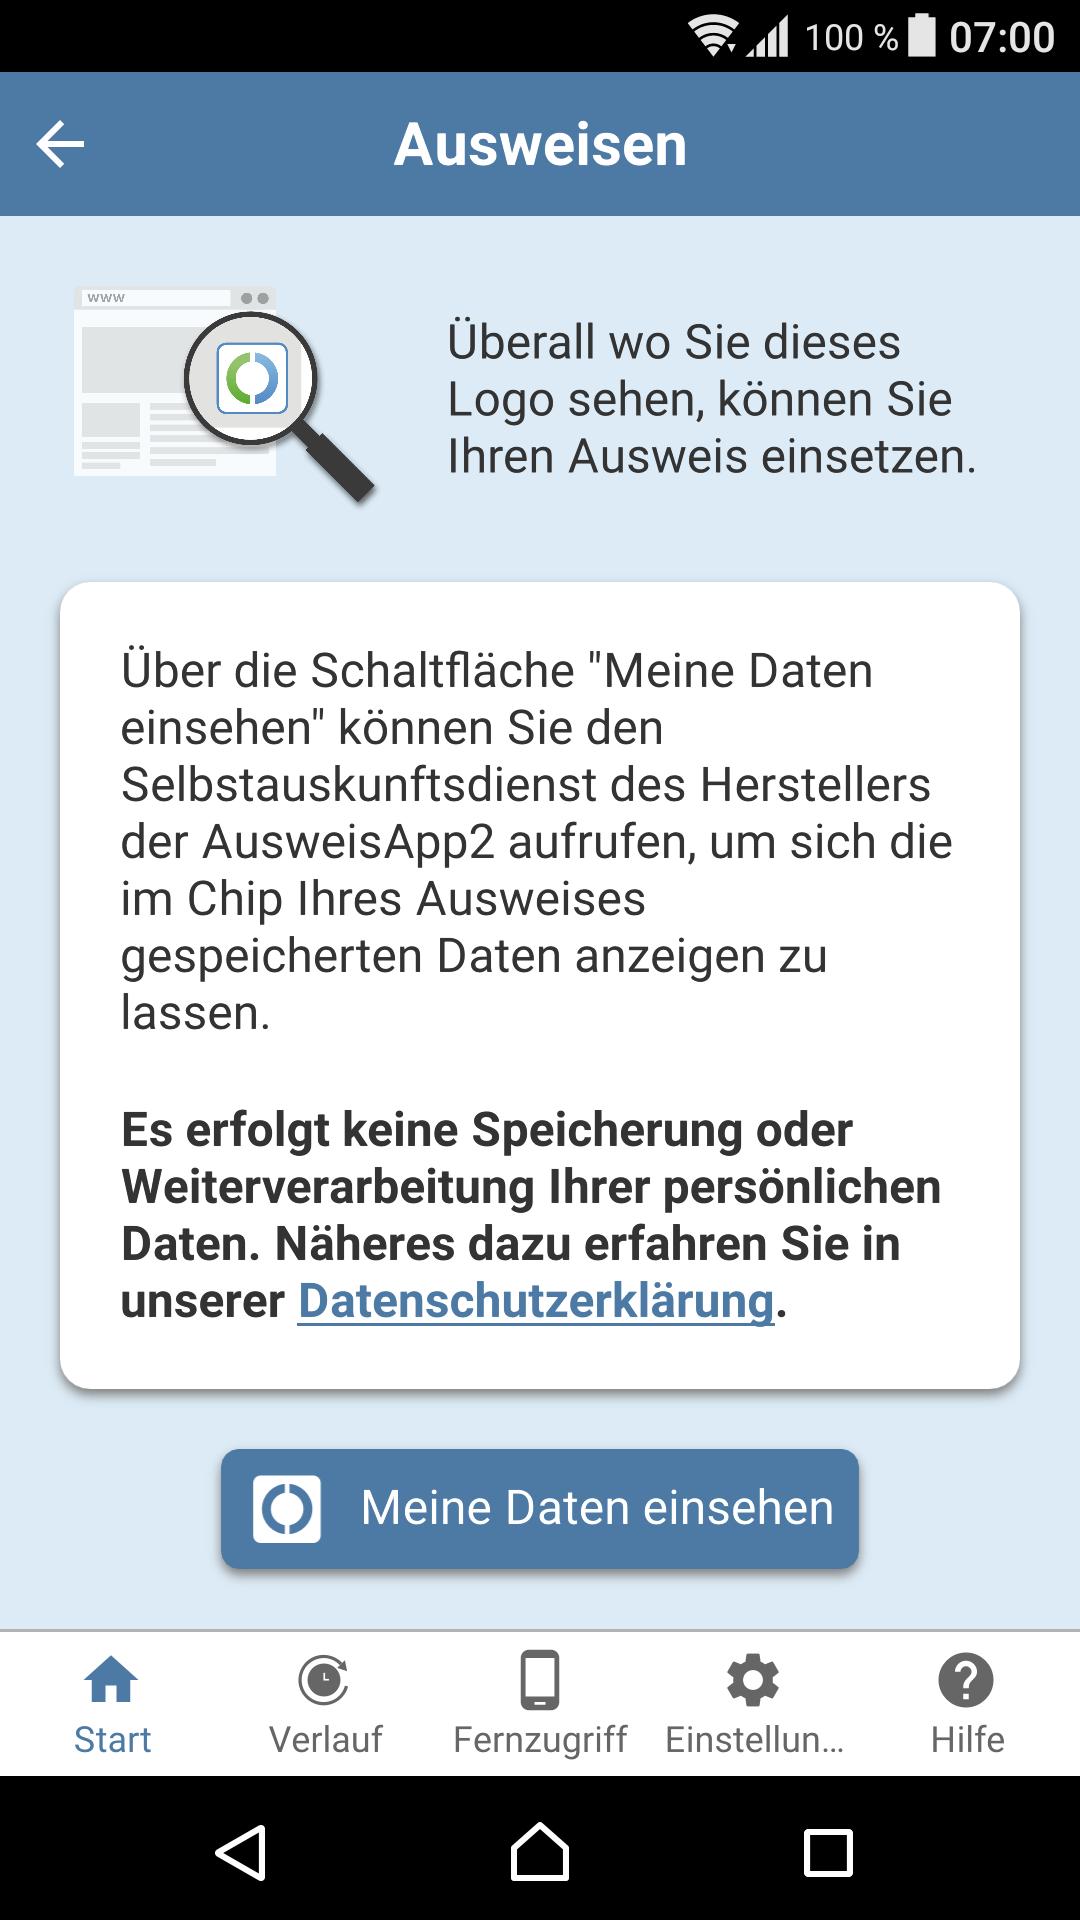 AusweisApp2 1.22.1 Screenshot 3